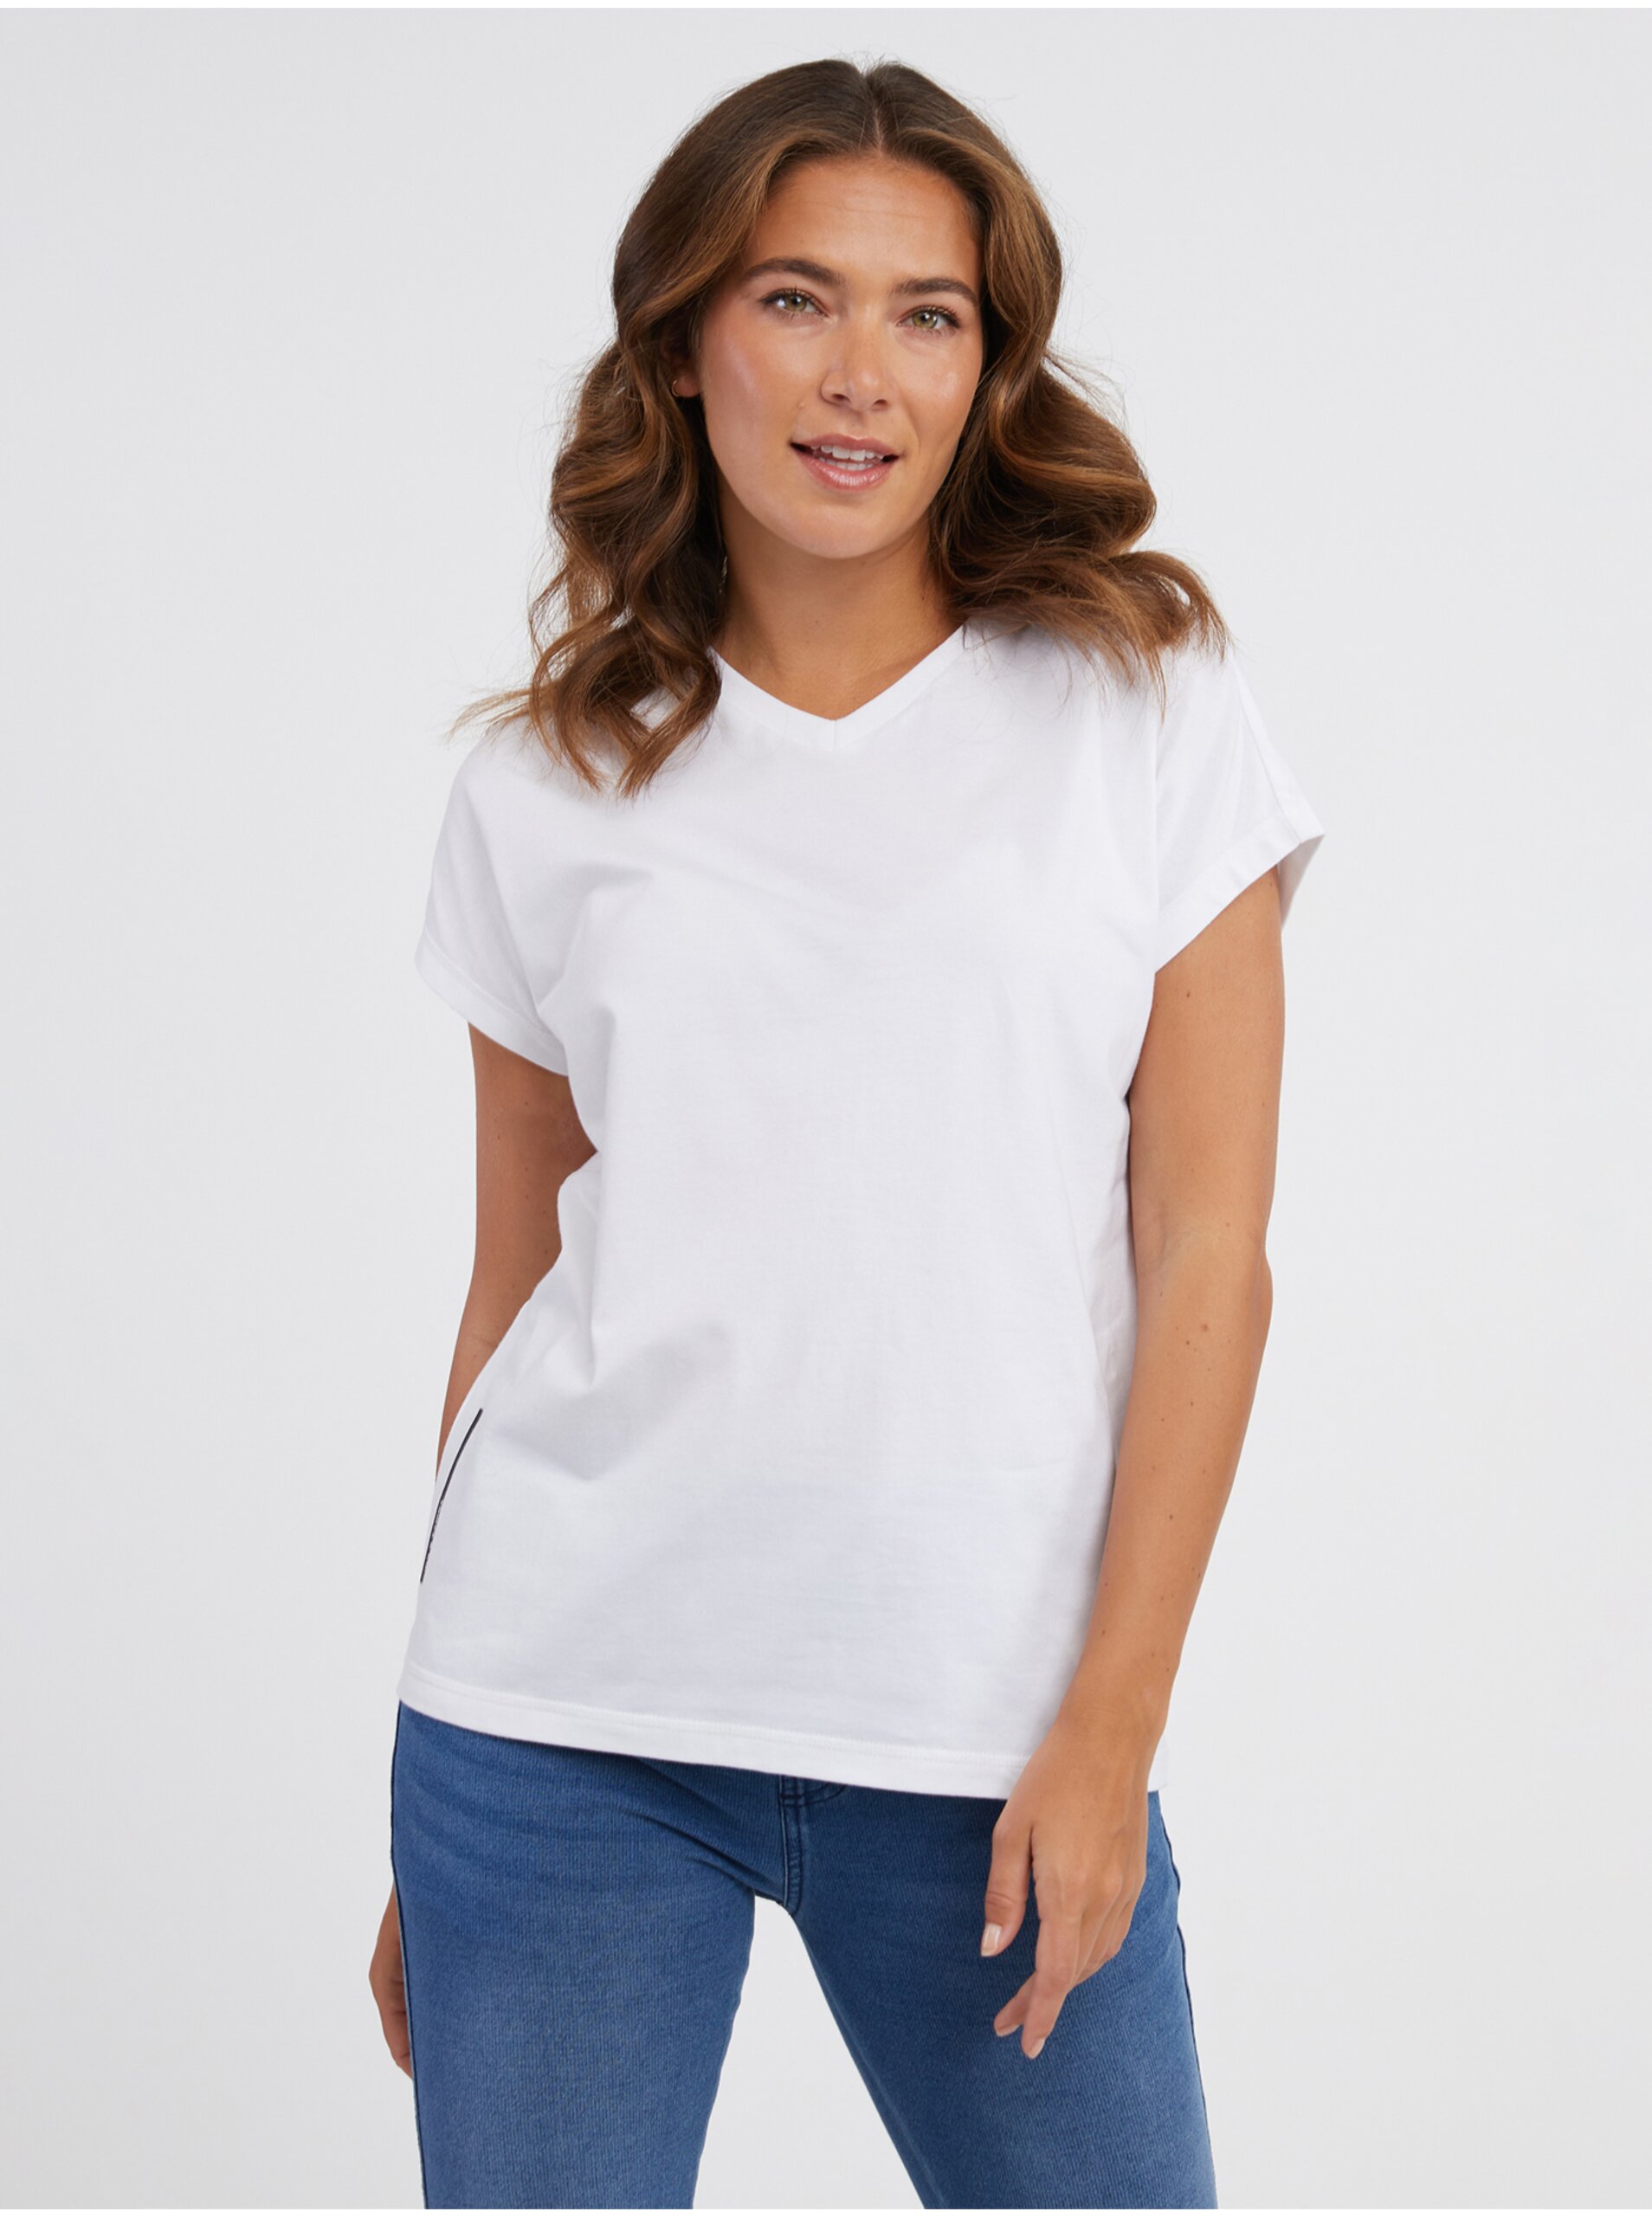 E-shop Bílé dámské tričko SAM 73 Vitani